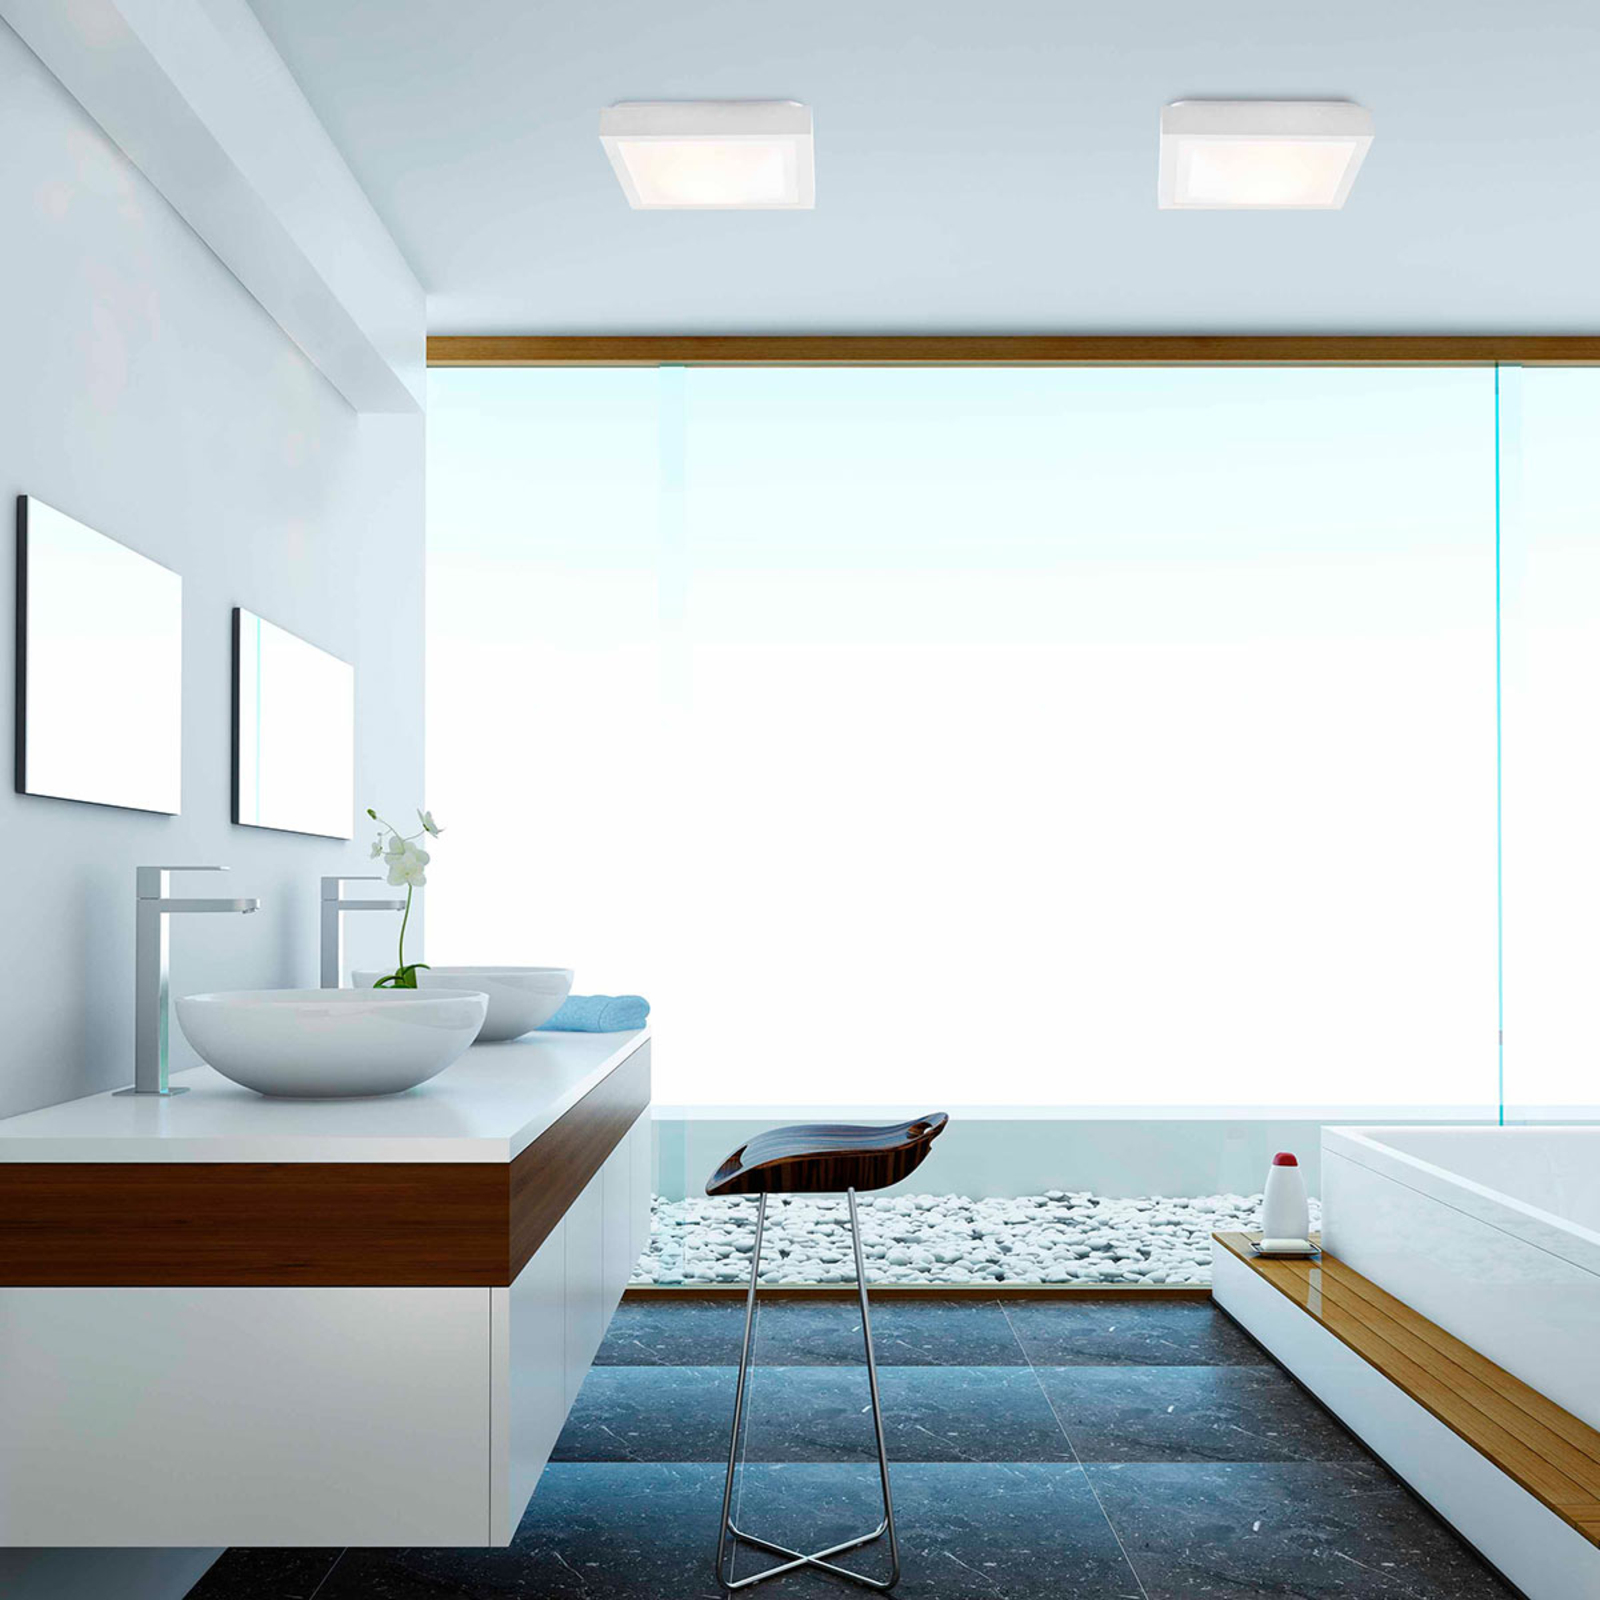 Koupelnové stropní světlo Tola, 32 x 32 cm, bílá